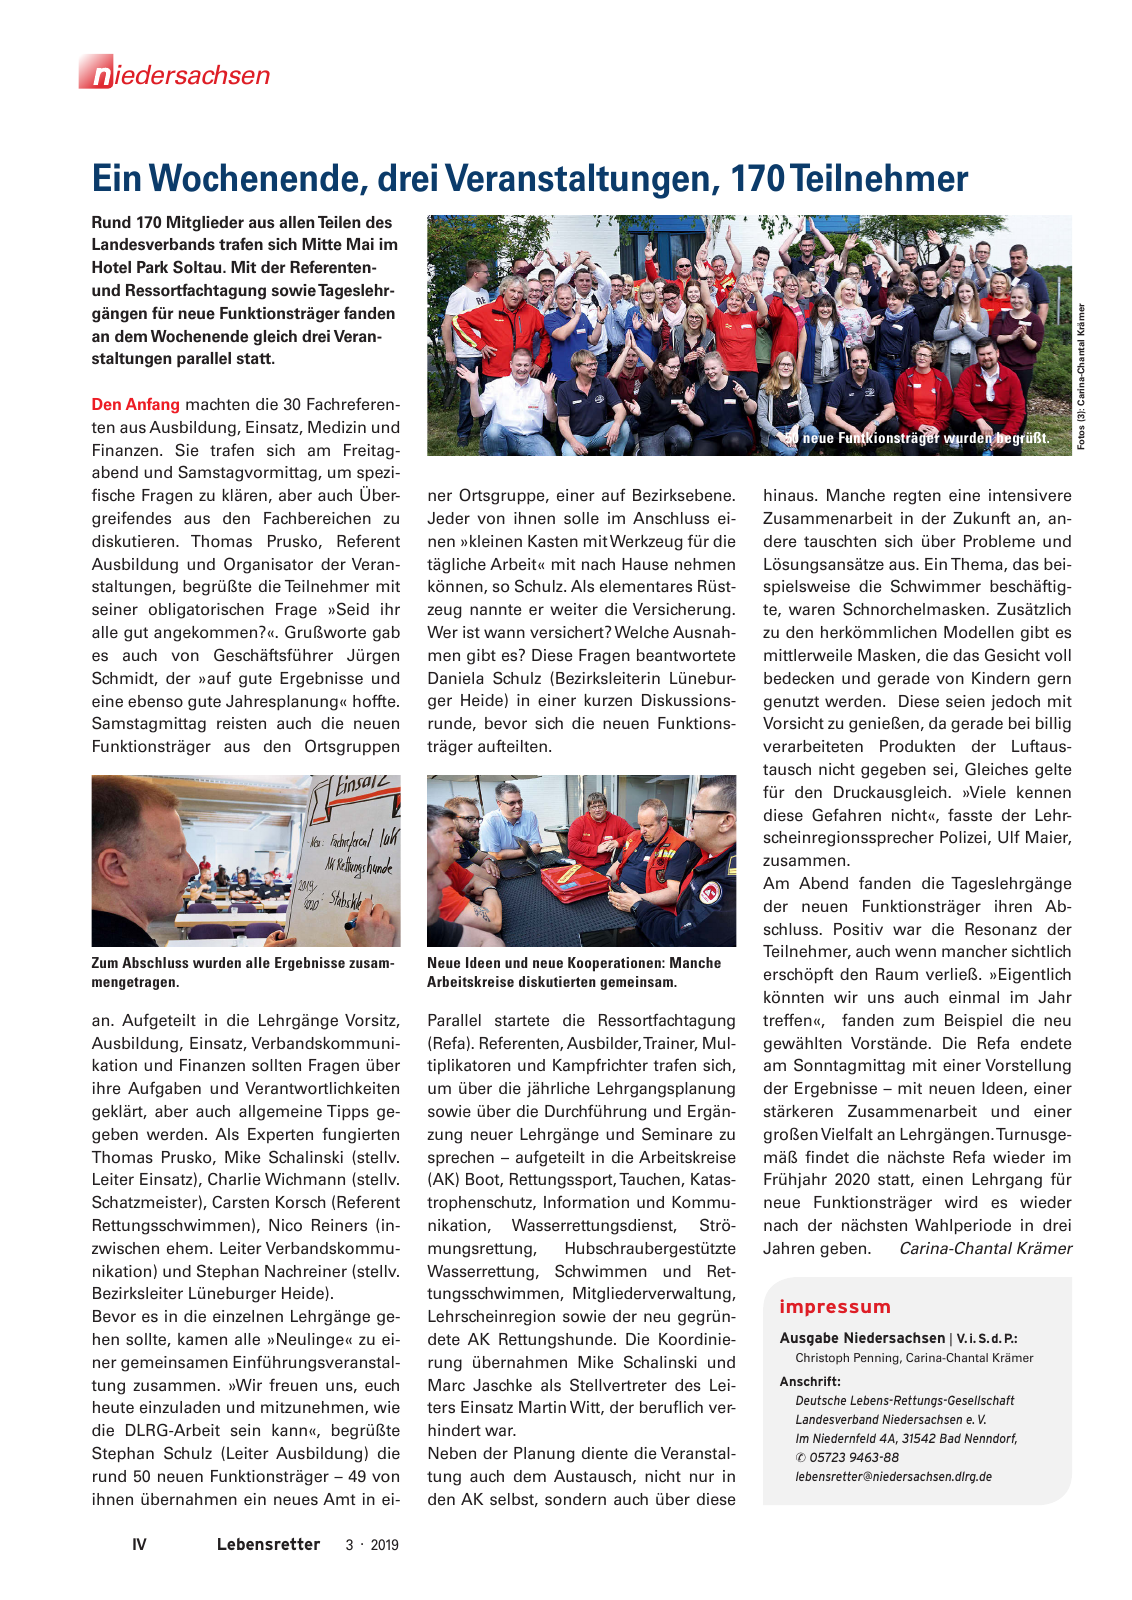 Vorschau Lebensretter 3/2019 - Niedersachsen Regionalausgabe Seite 6